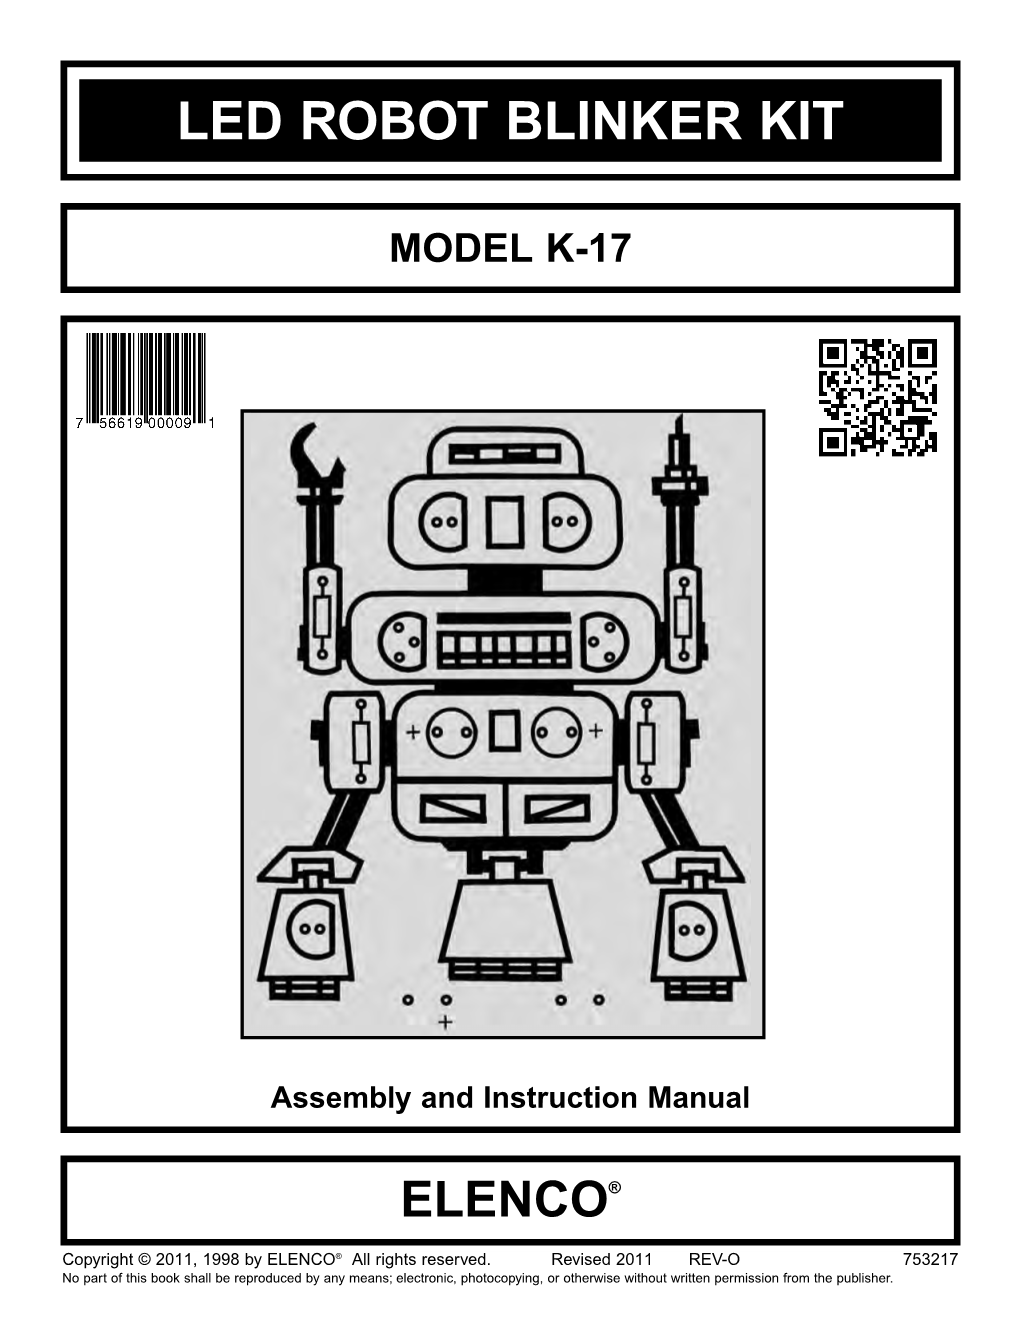 Led Robot Blinker Kit